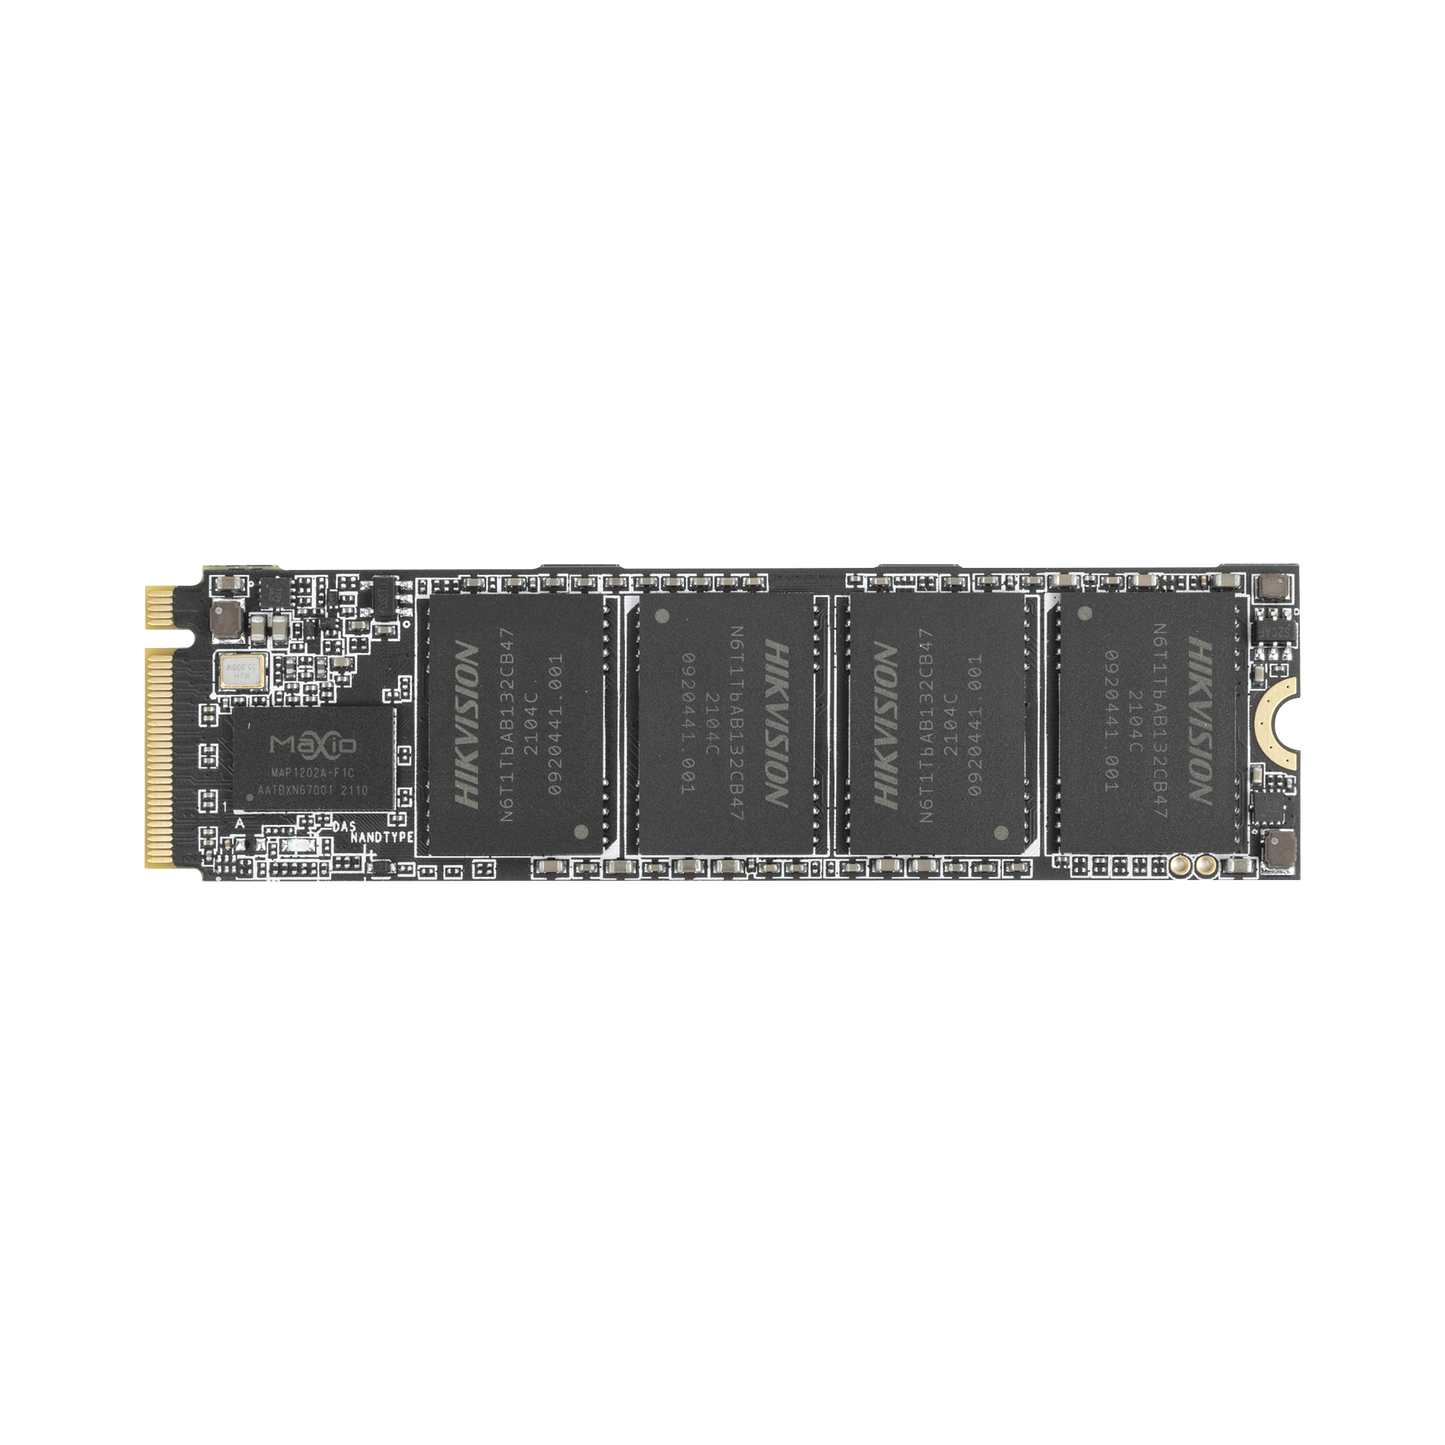 Unidad de Estado Sólido (SSD) 512 GB / DRAM-Less / PERFORMANCE EXTREMO en Lectura y Escritura/ Hasta 3476 MB/s / M.2 NVMe / Para Gaming y PC Trabajo Pesado